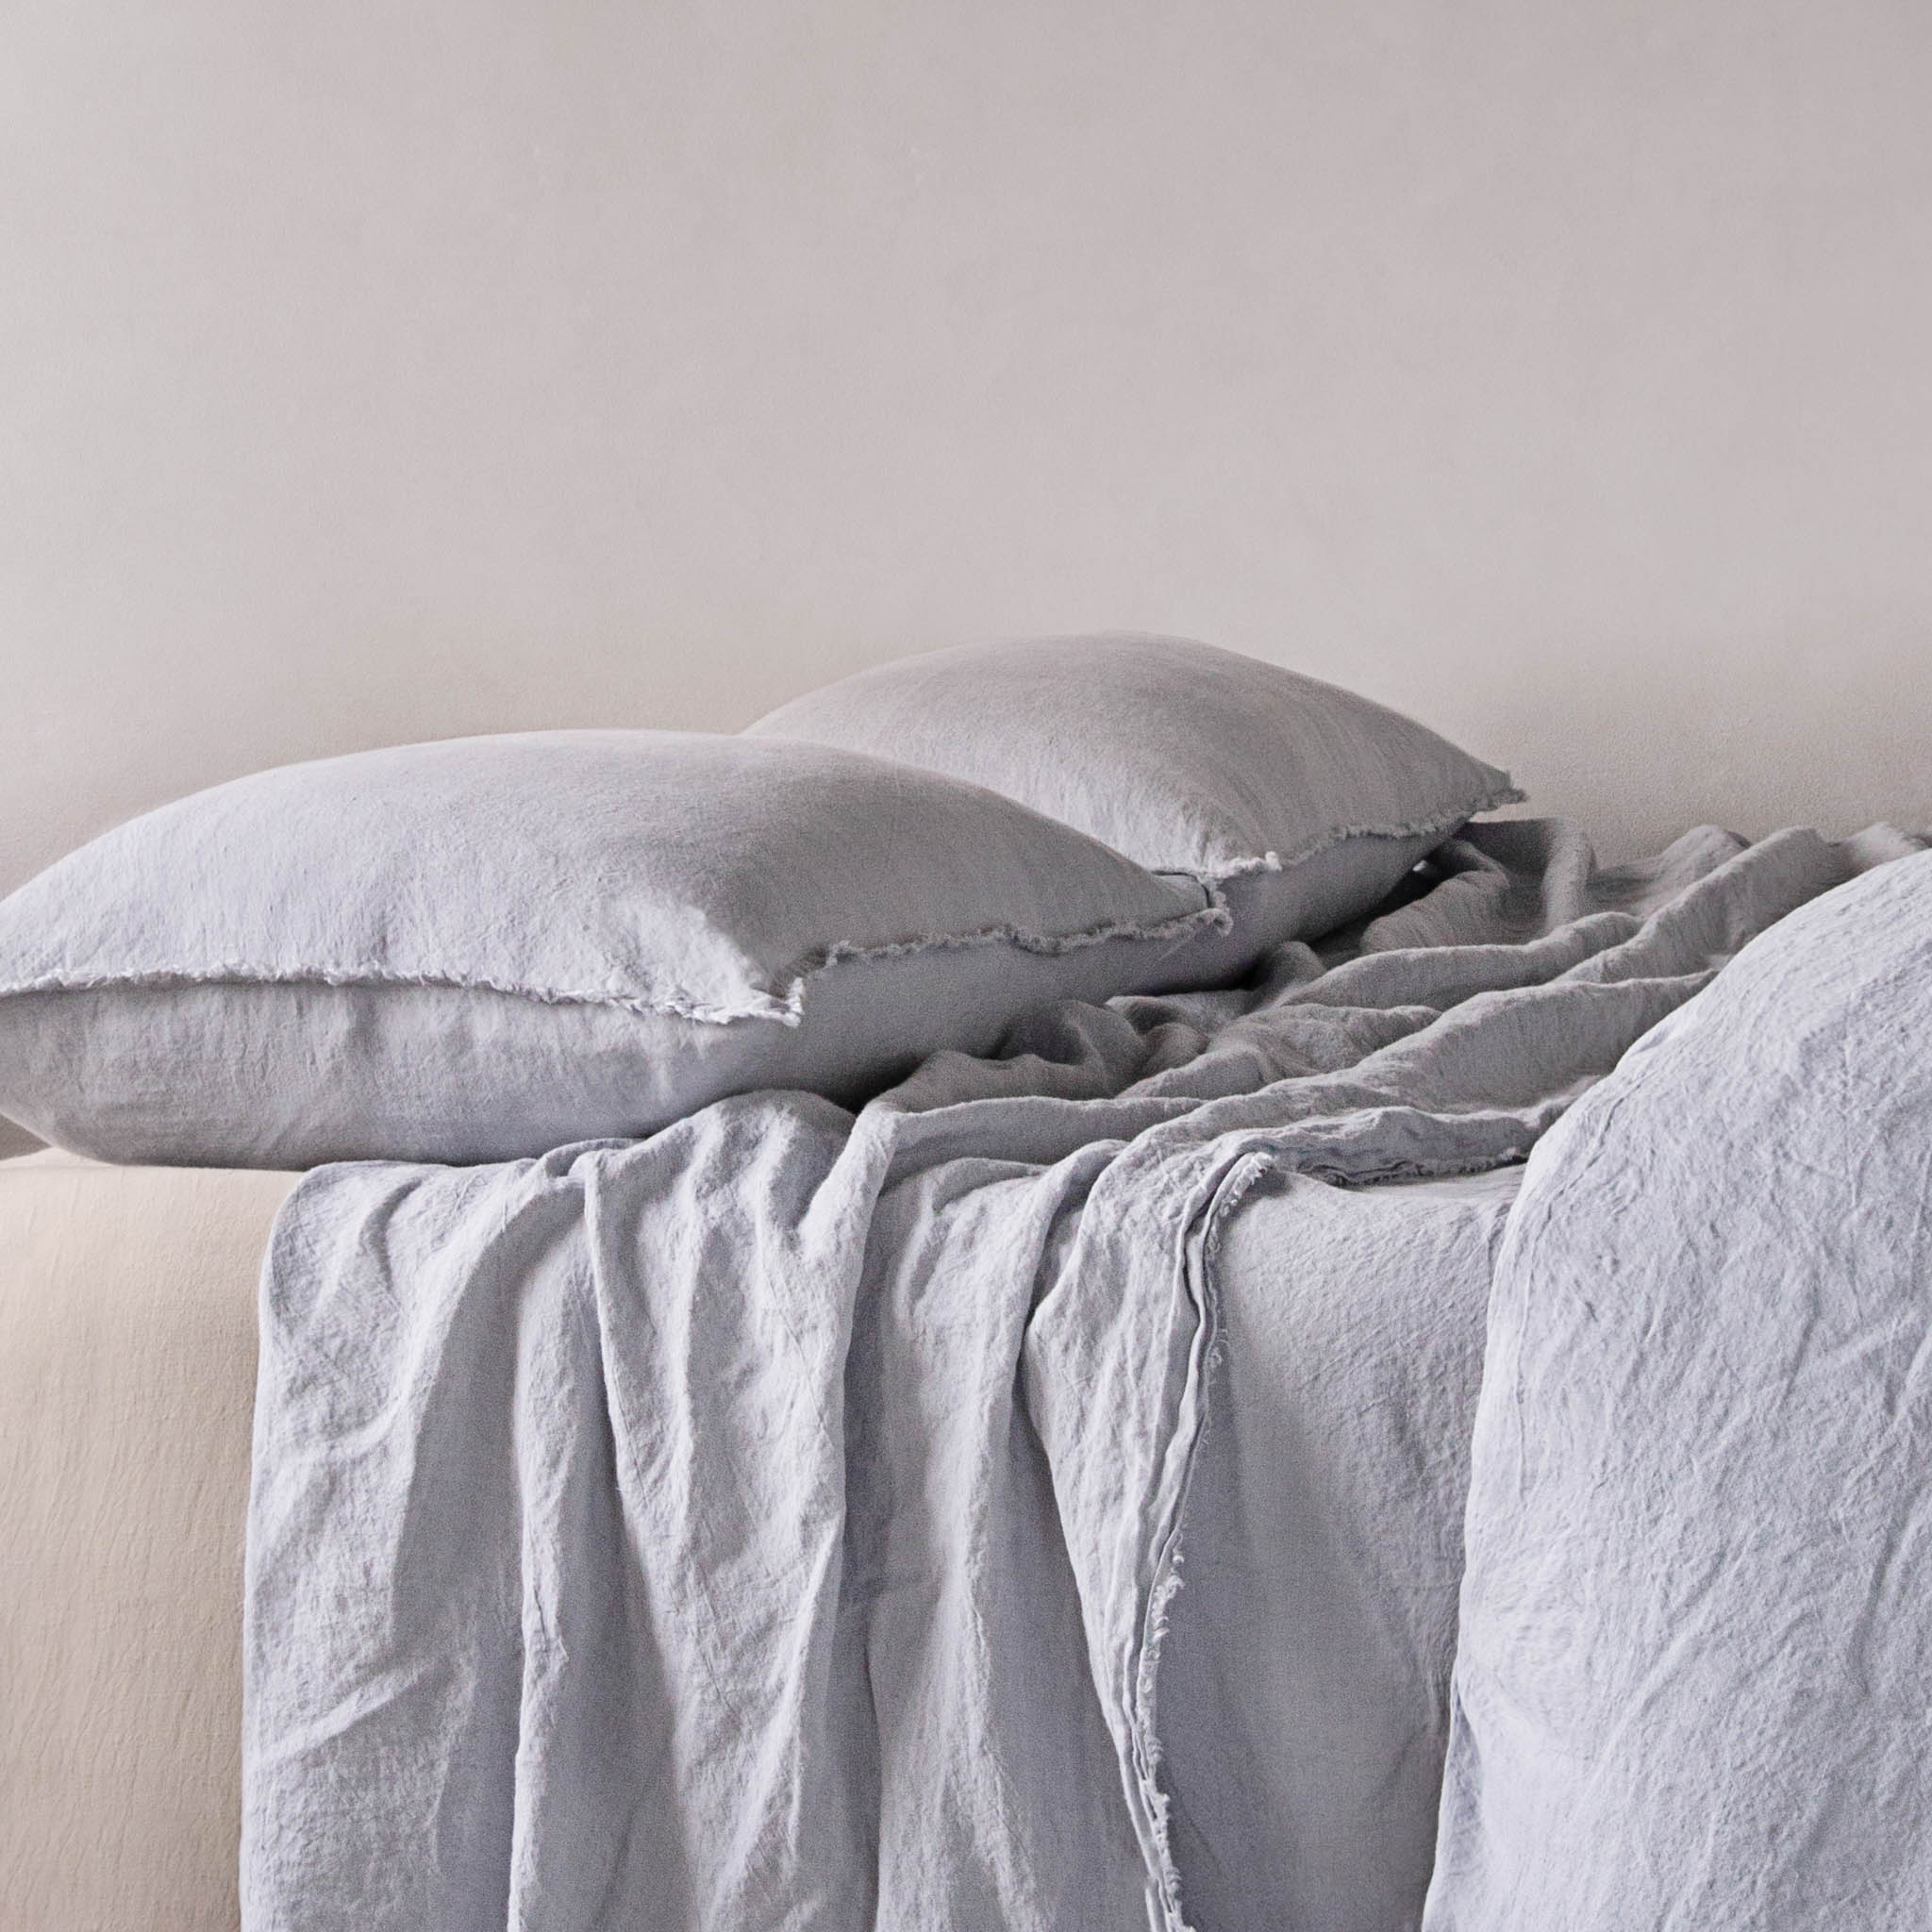 Flocca Linen Pillowcase | Pale Grey  | Hale Mercantile Co.